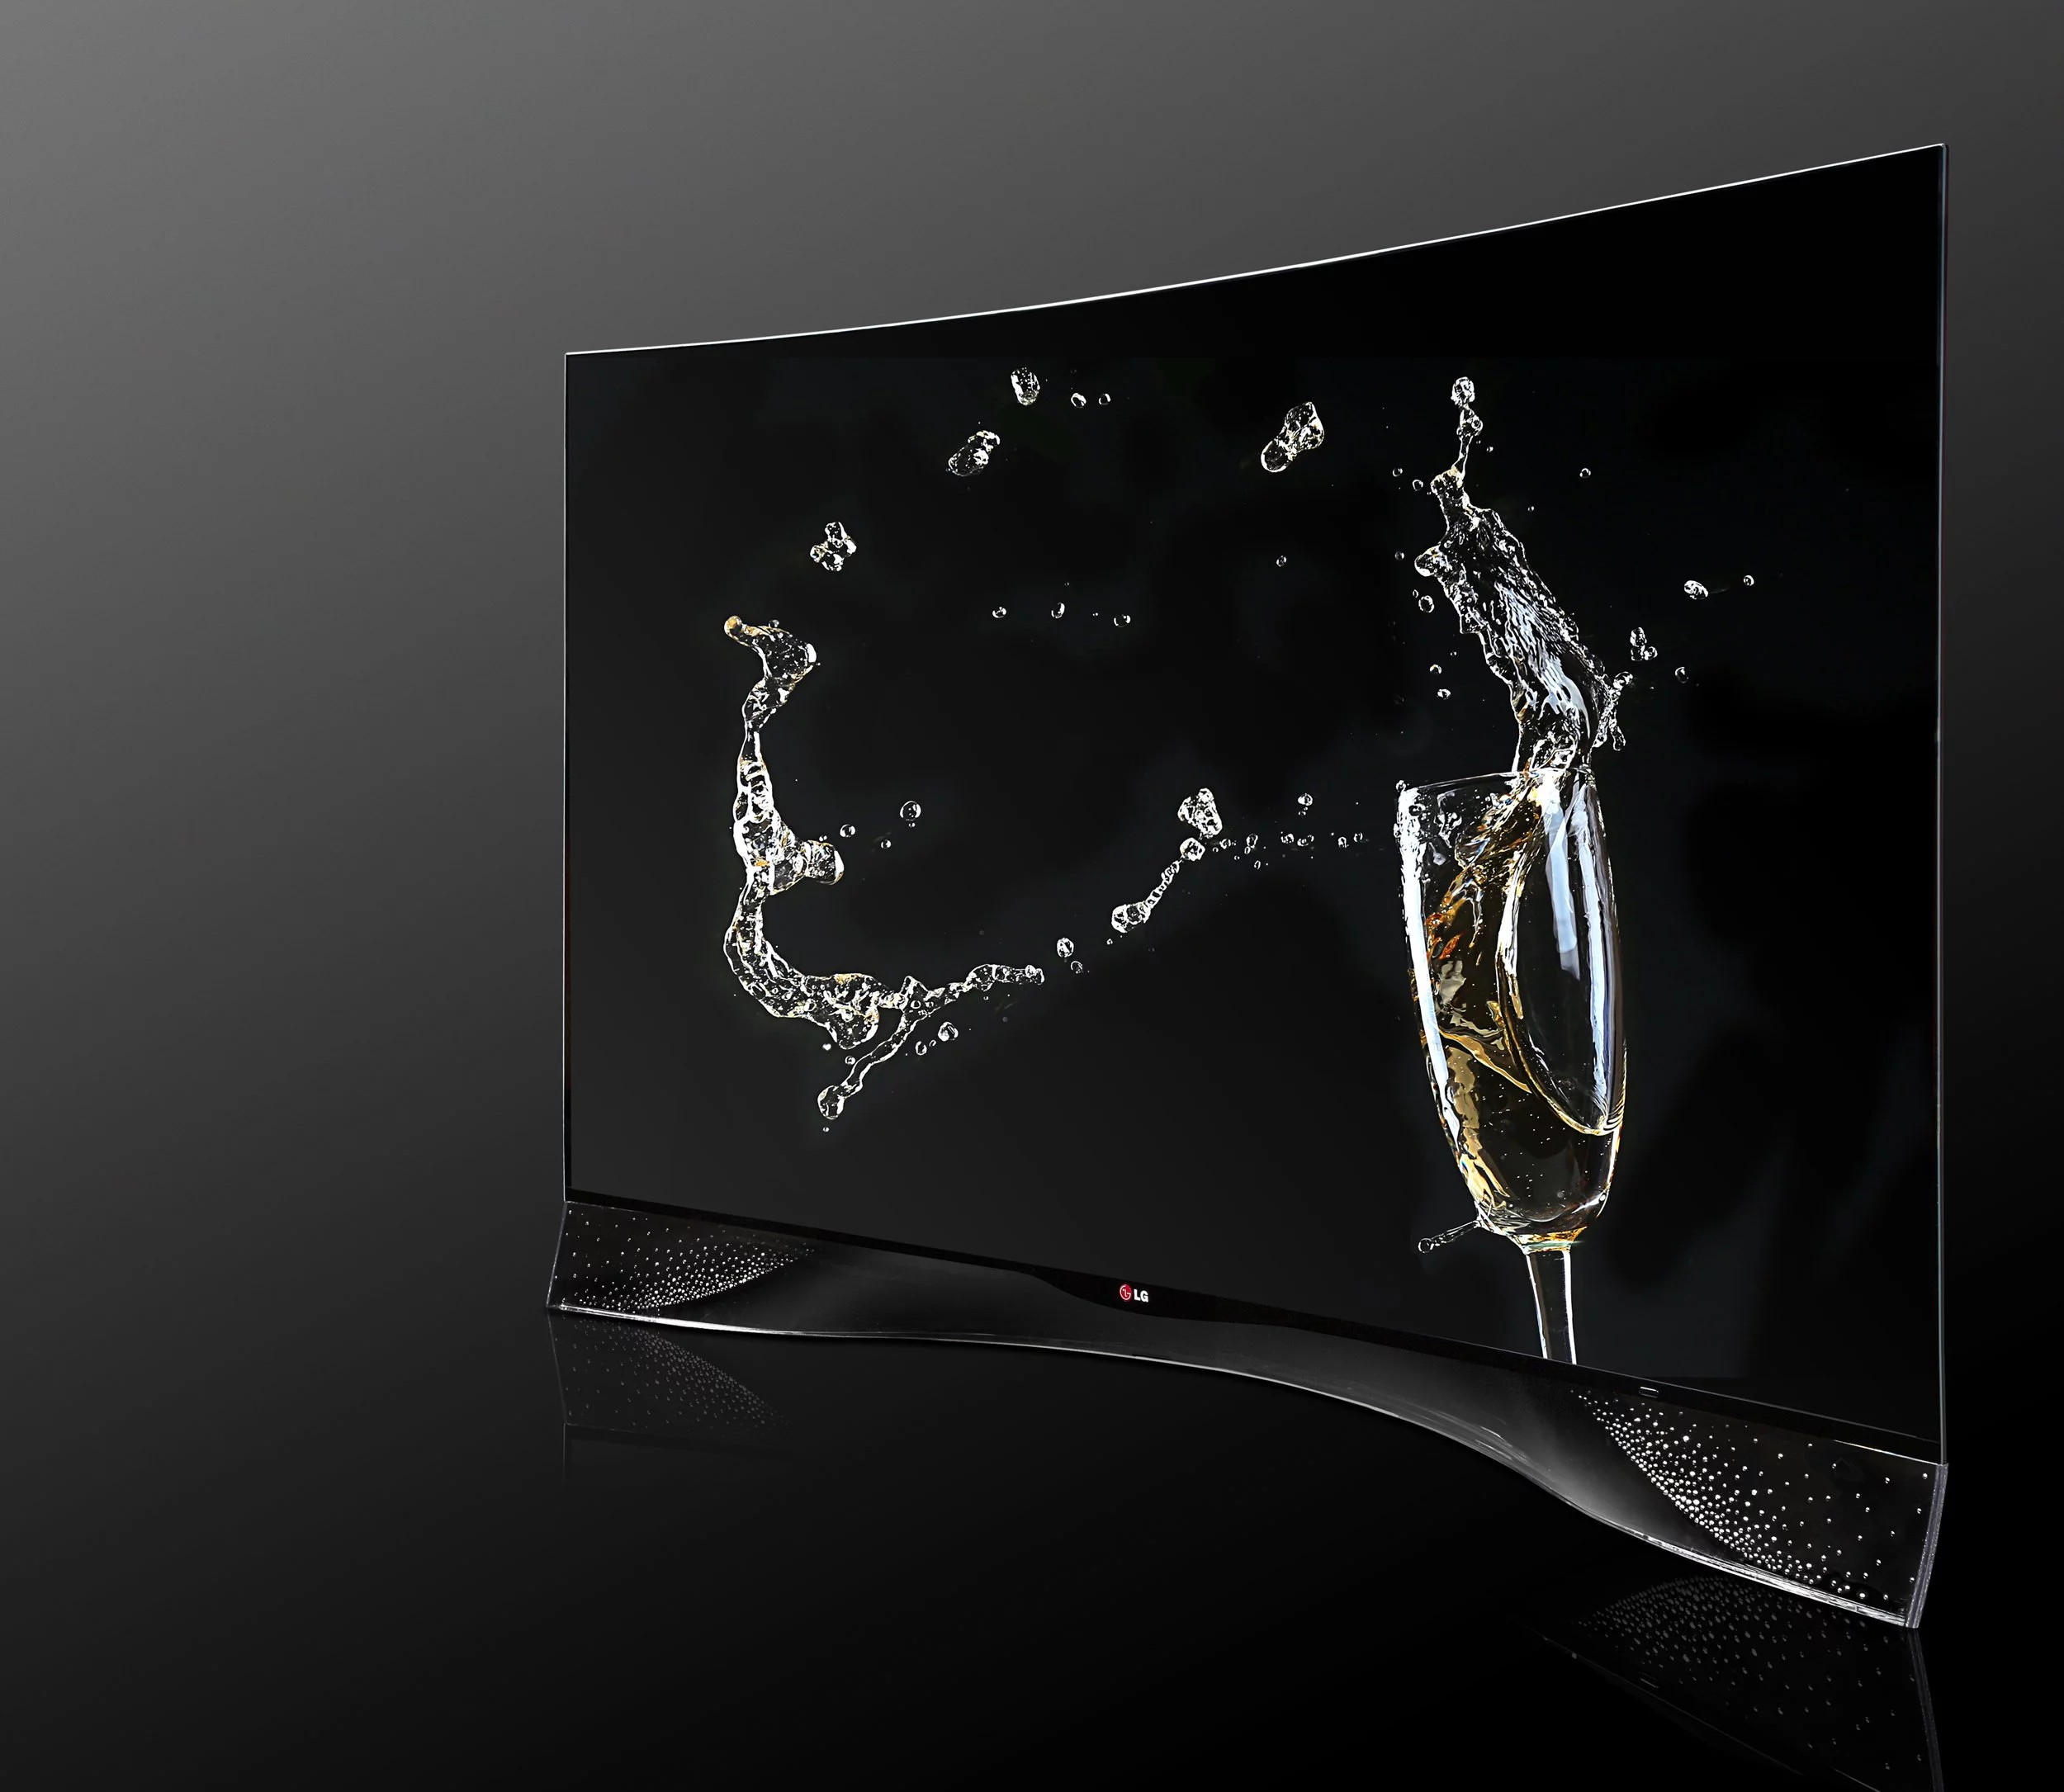 LG OLED HDTV Swarovski Crystals